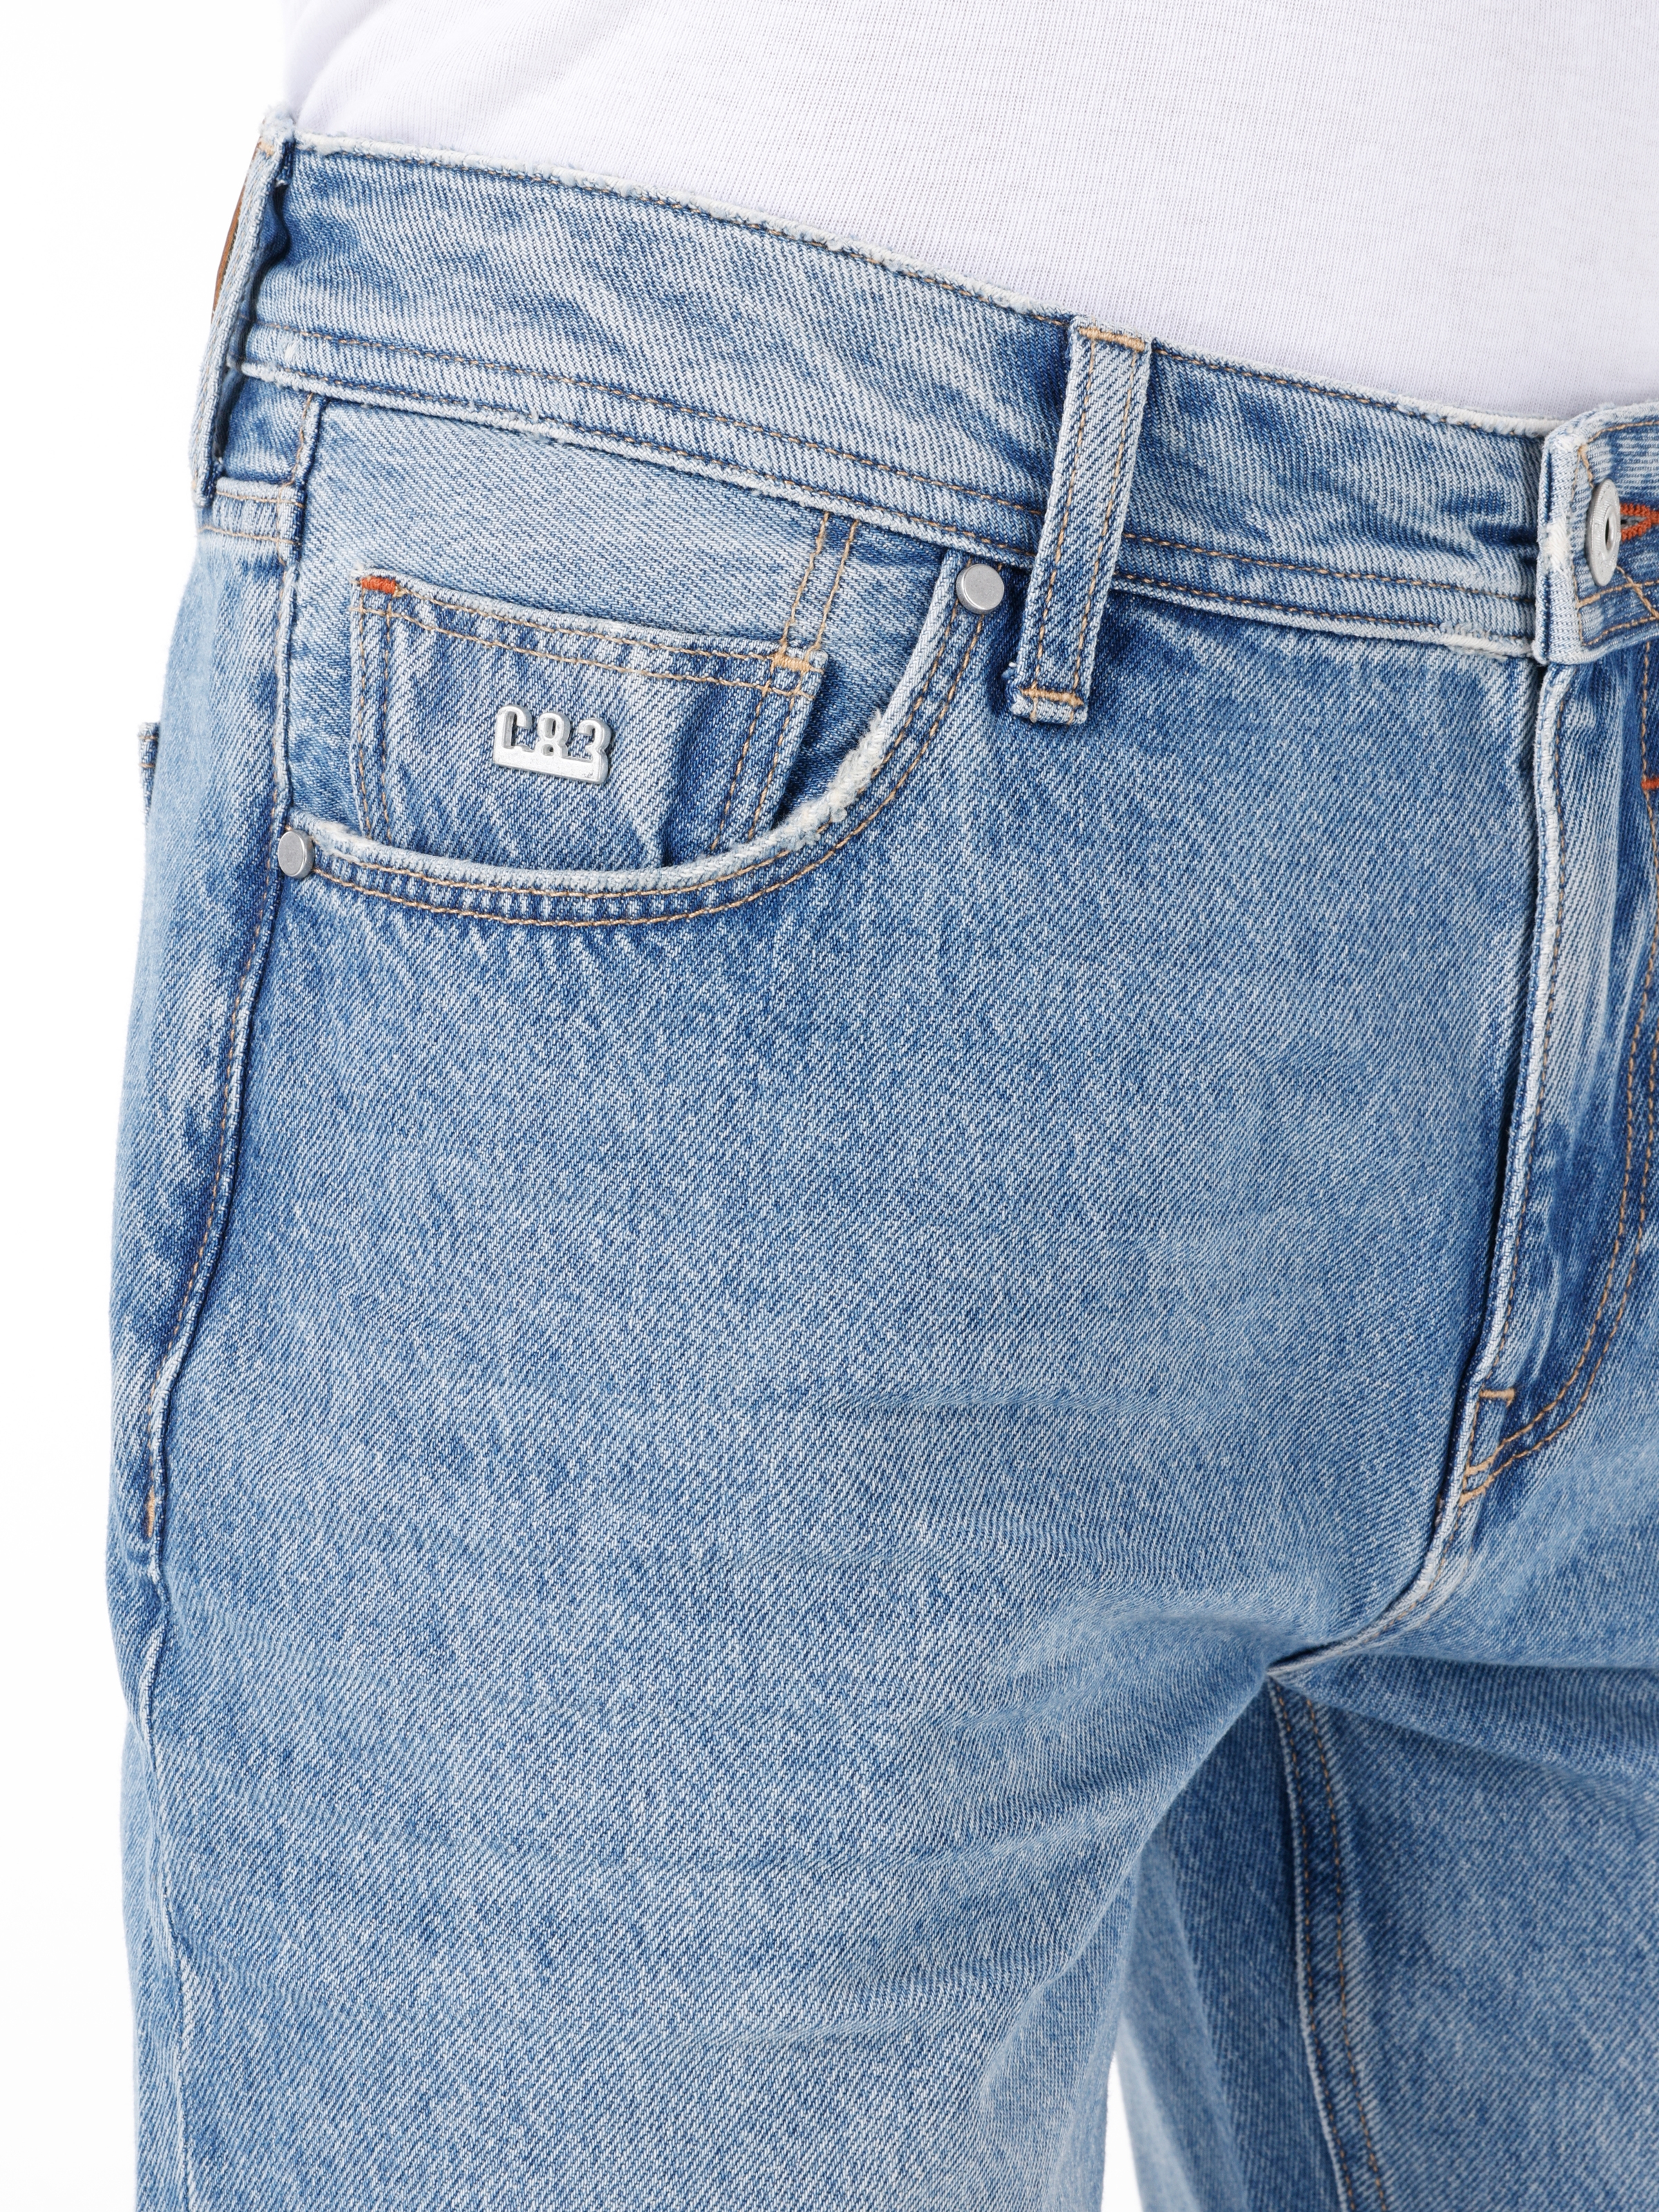 Afișați detalii pentru Short / Pantaloni Scurti De Barbati Albastru Regular Fit 045 DAVID 